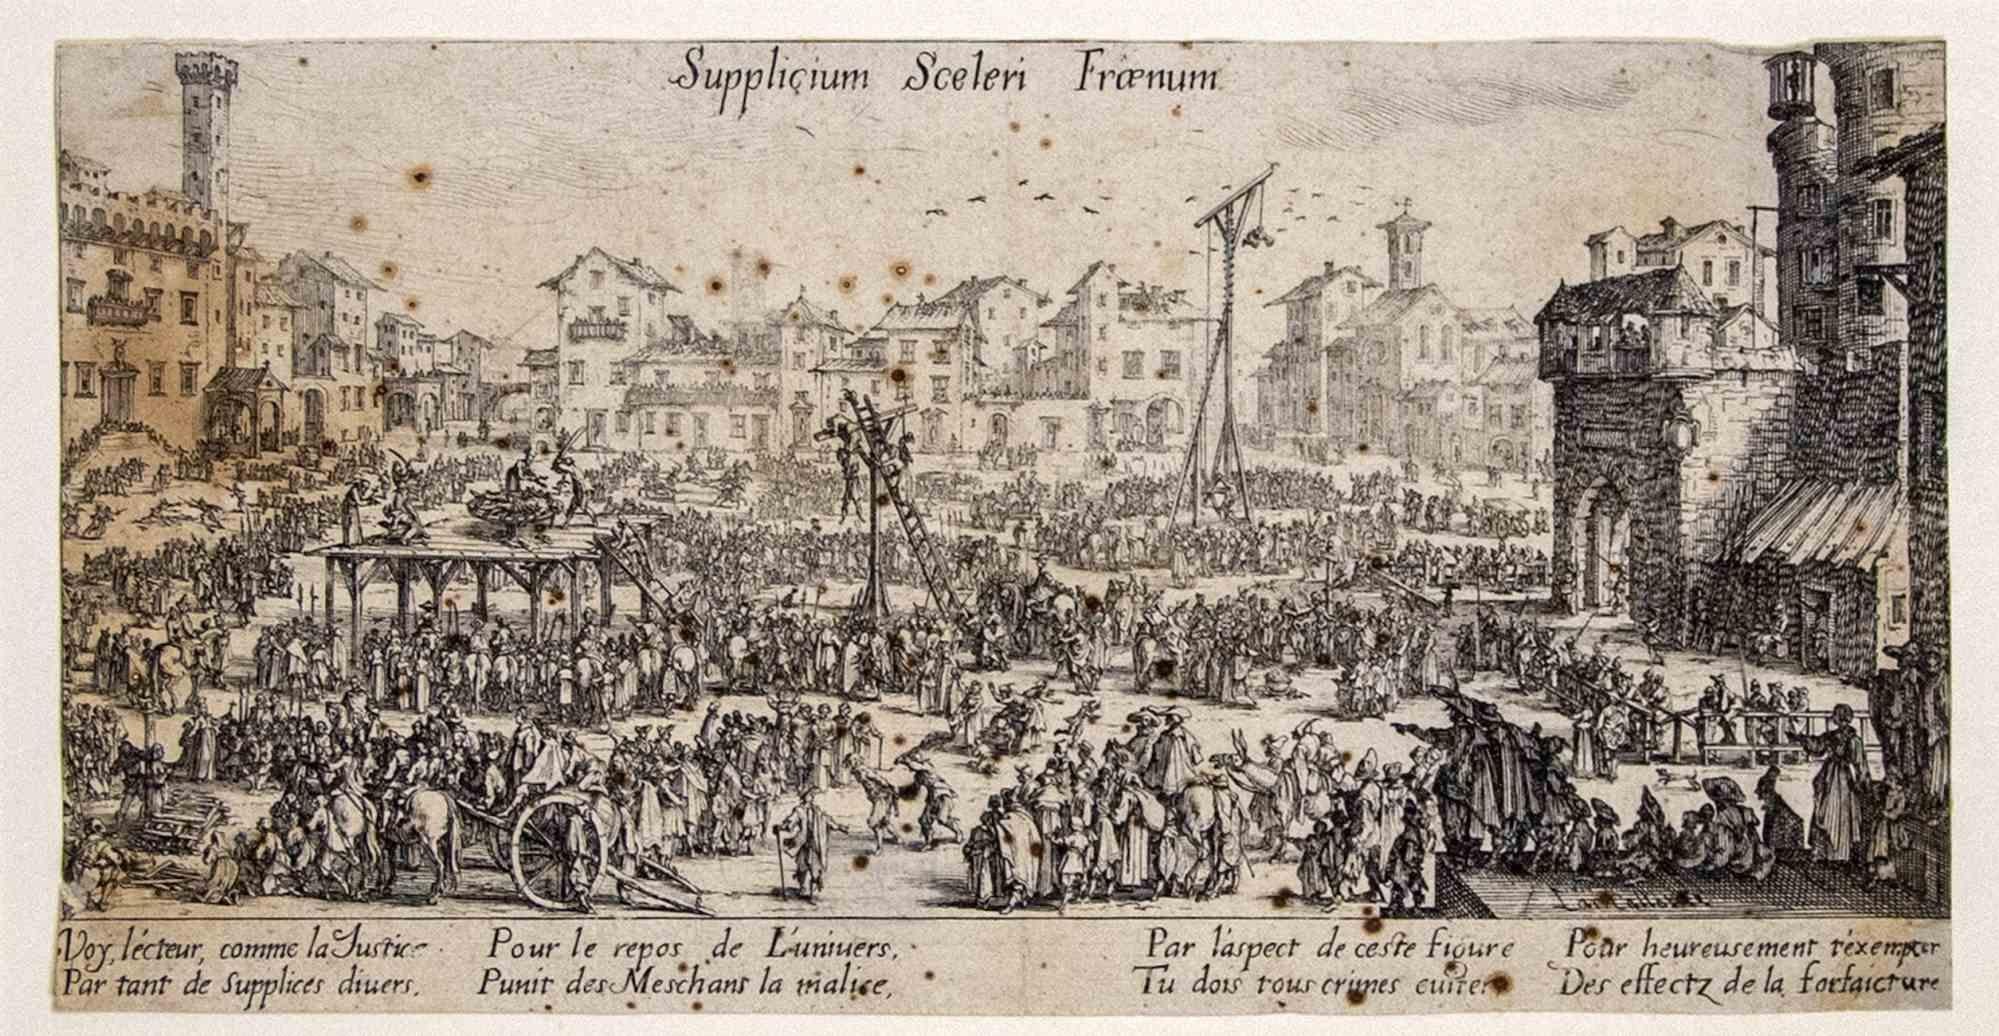 Supplicium sceleri Fraenum - Original Etching by Jacques Callot - 1624/34